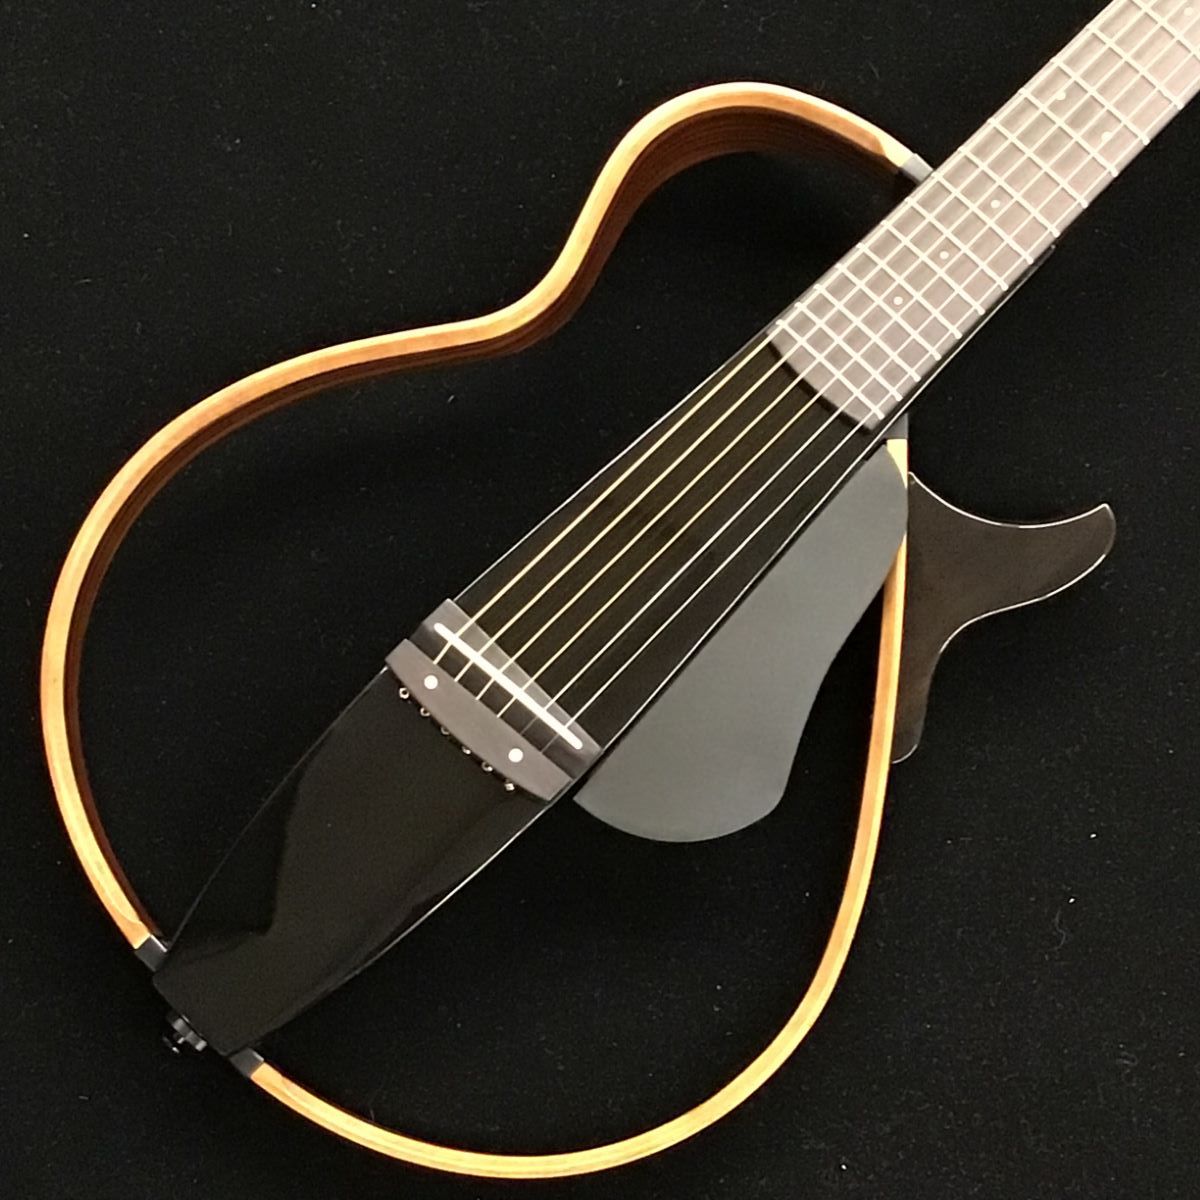 SLG200S TBLサイレントギター/スチール弦モデル